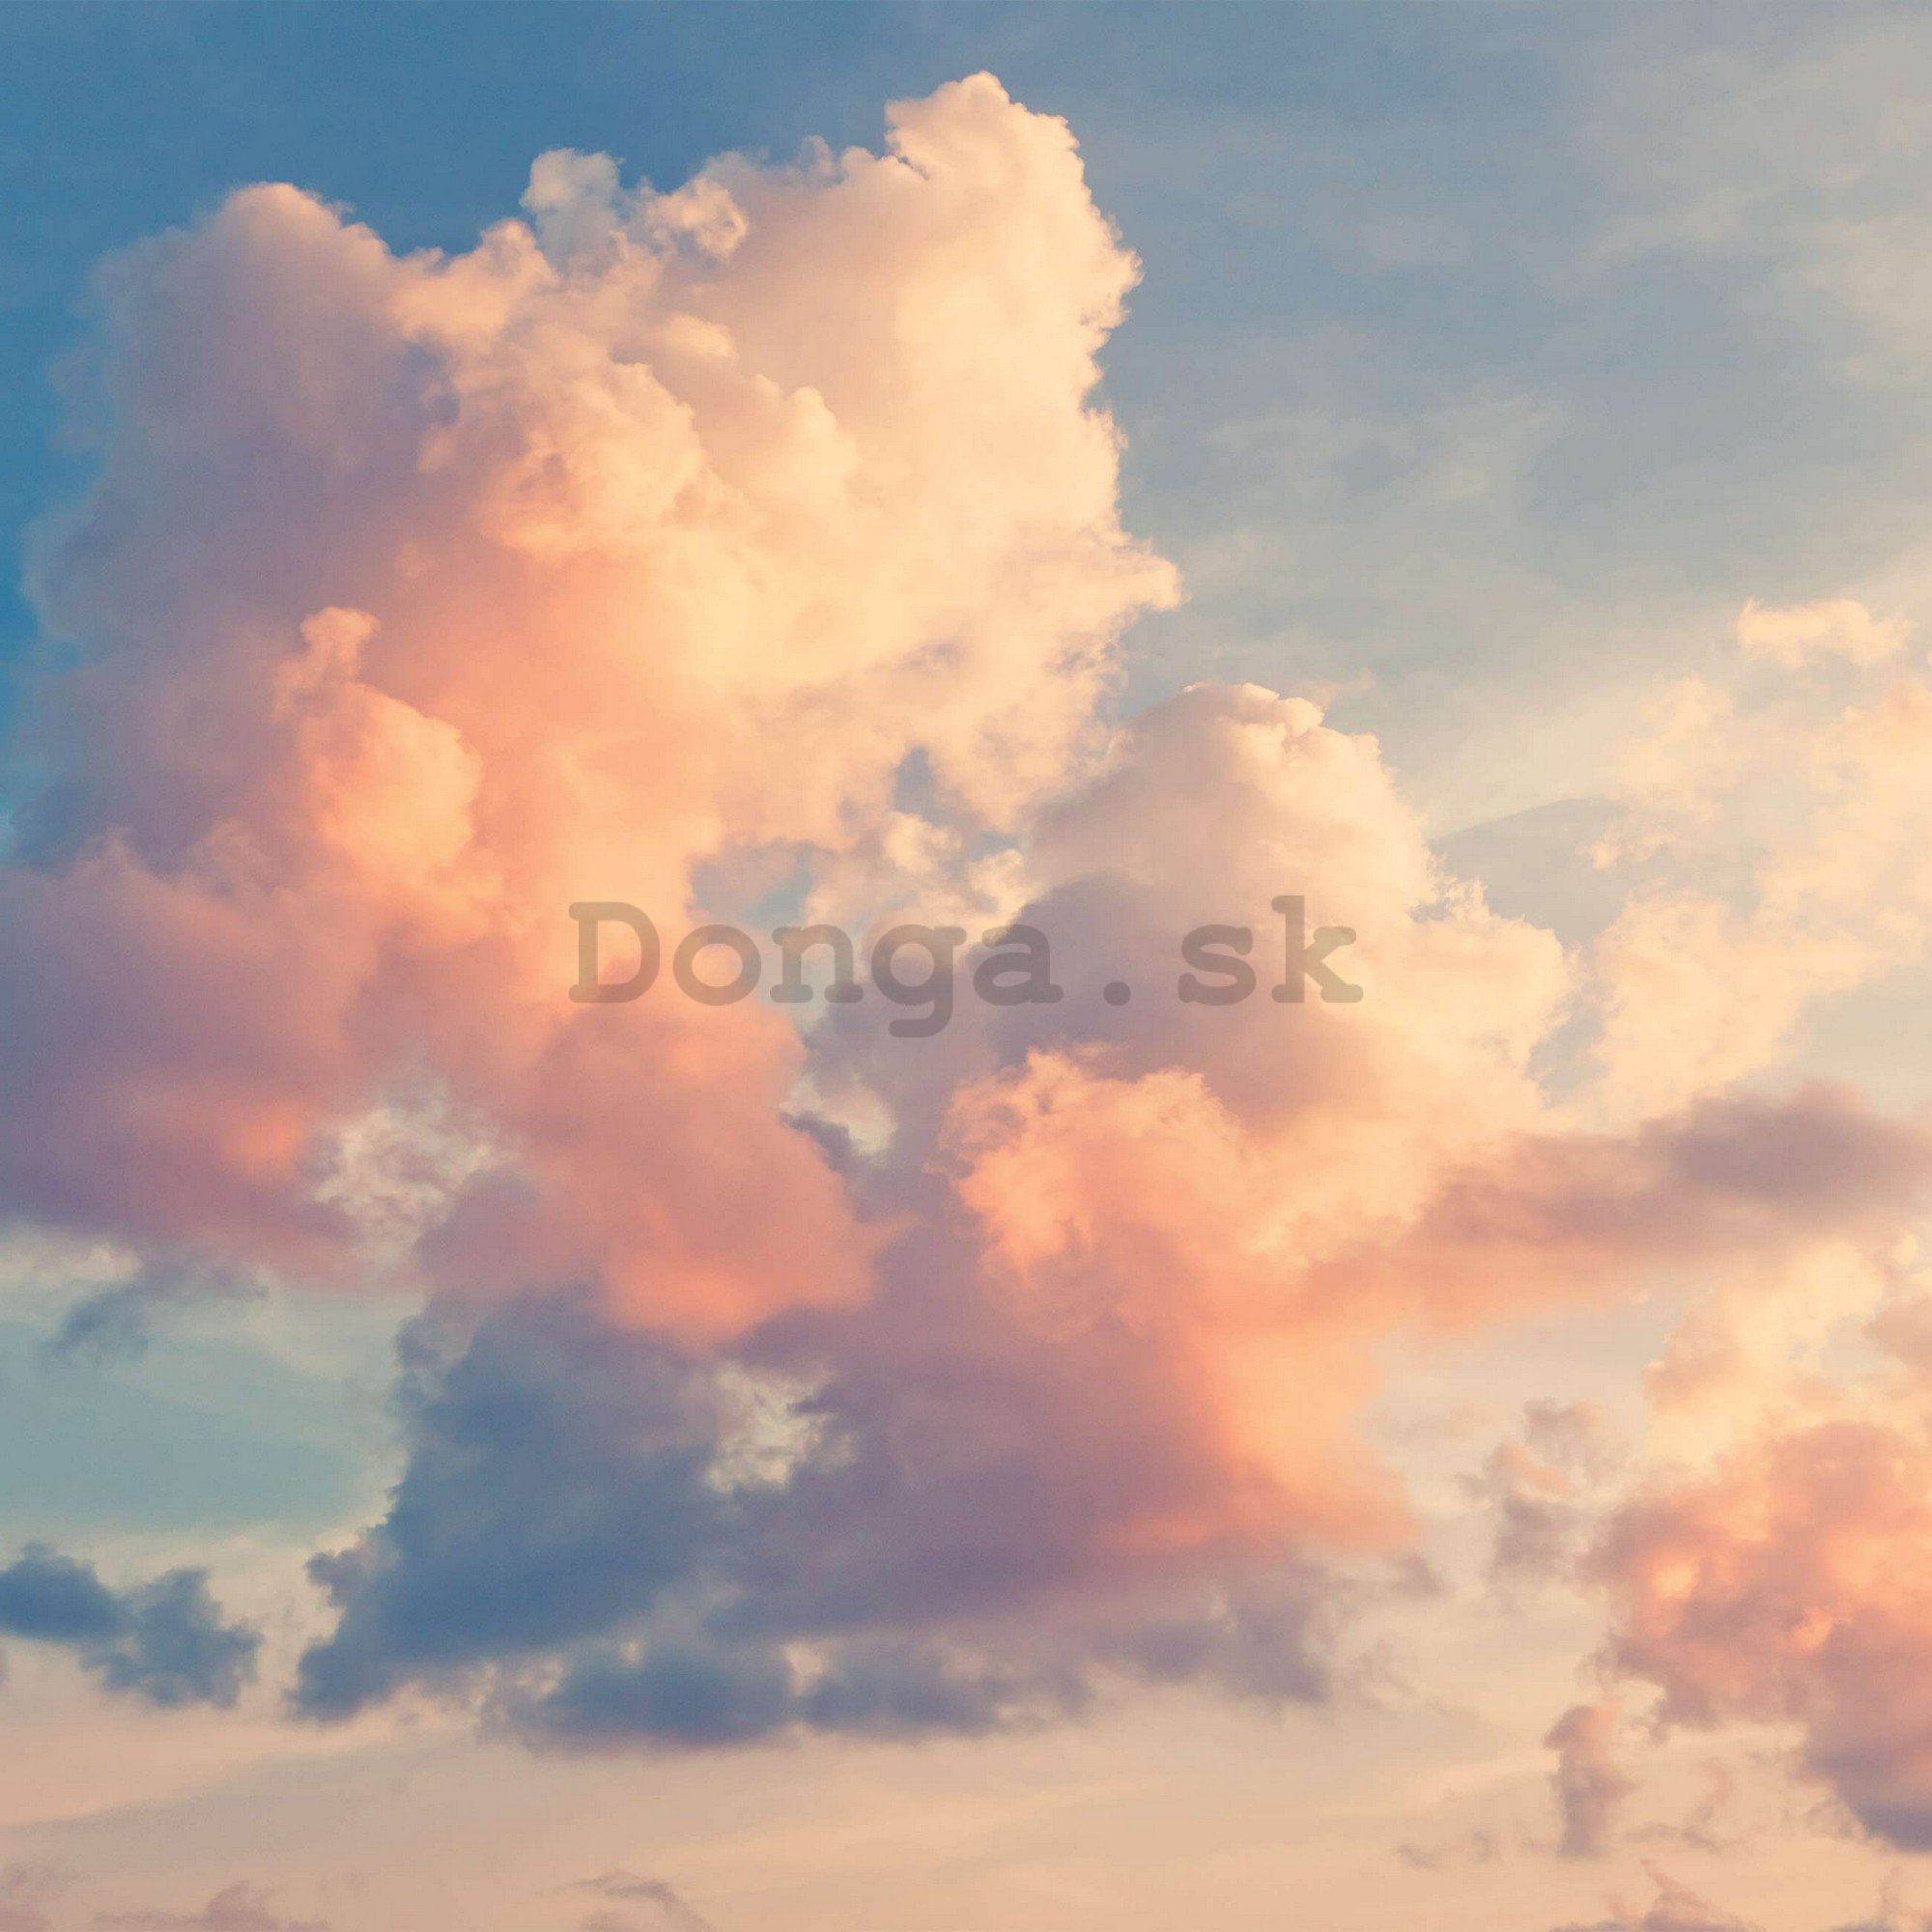 Fototapeta vliesová: Nebe s červánky - 254x184 cm